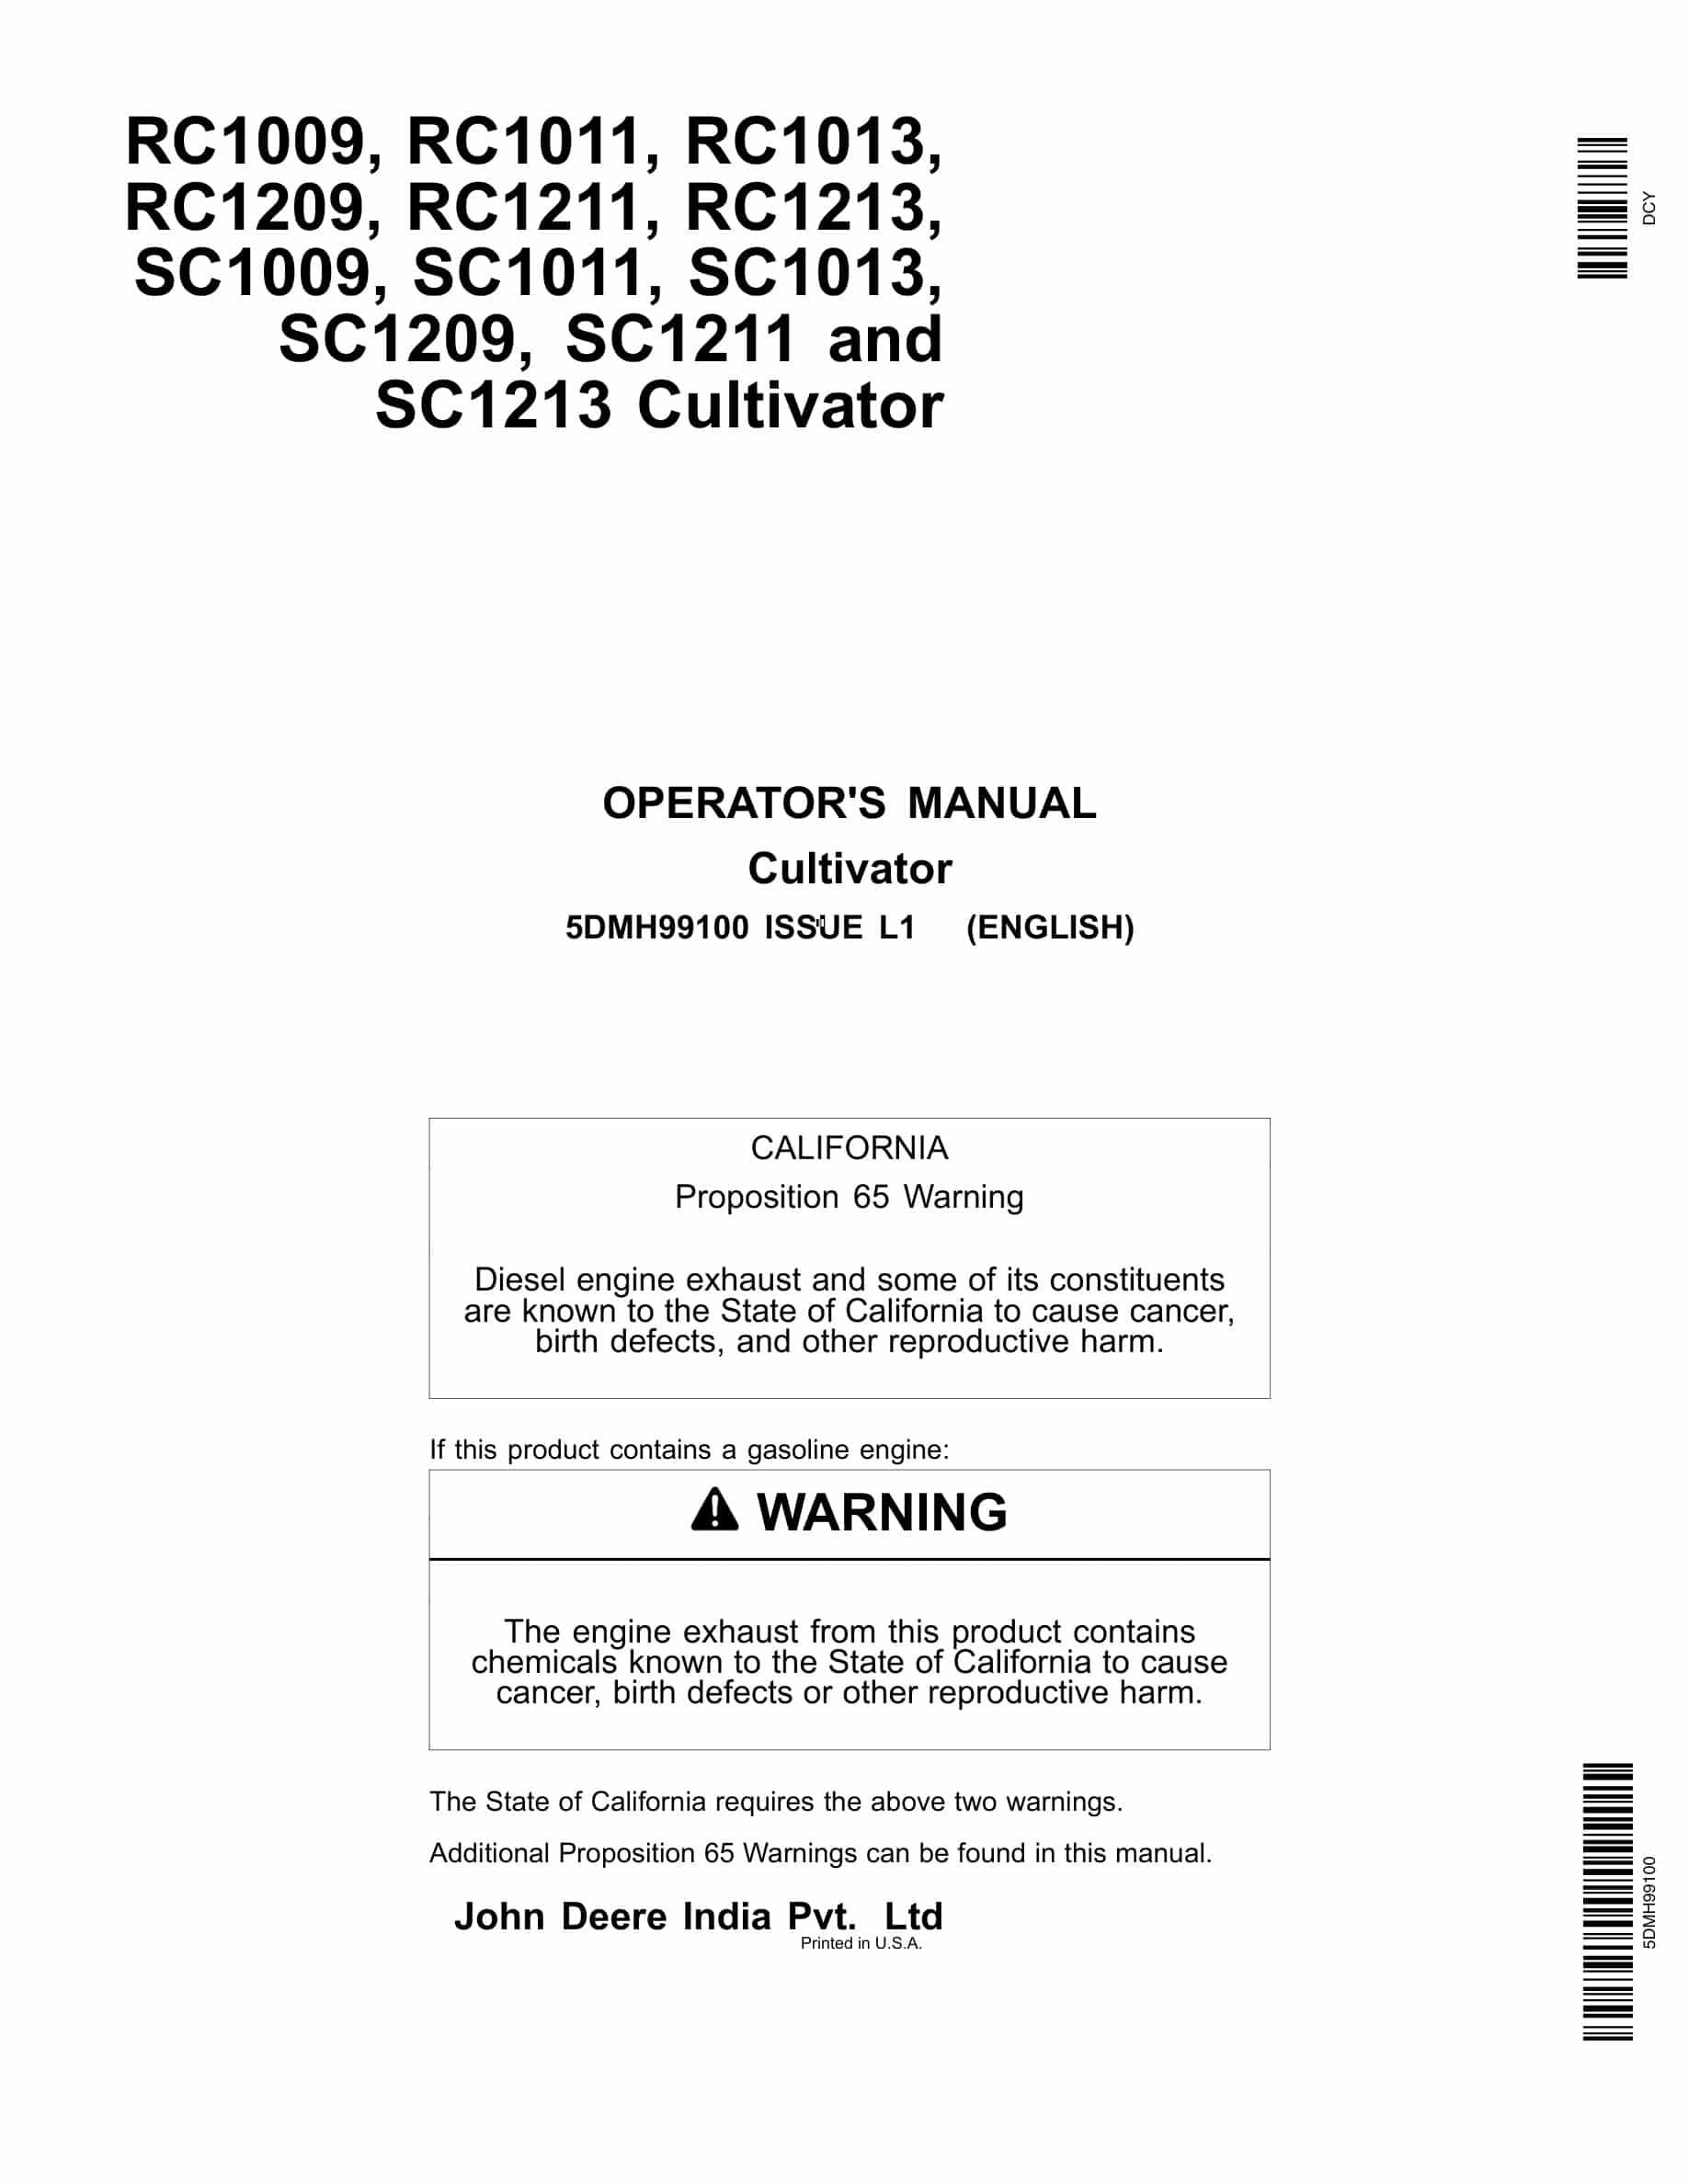 John Deere RC1009, RC1011, RC1013, RC1209, RC1211, RC1213, SC1009, SC1011, SC1013, SC1209, SC1211 and SC1213 CULTIVATOR Operator Manual 5DMH99100-1